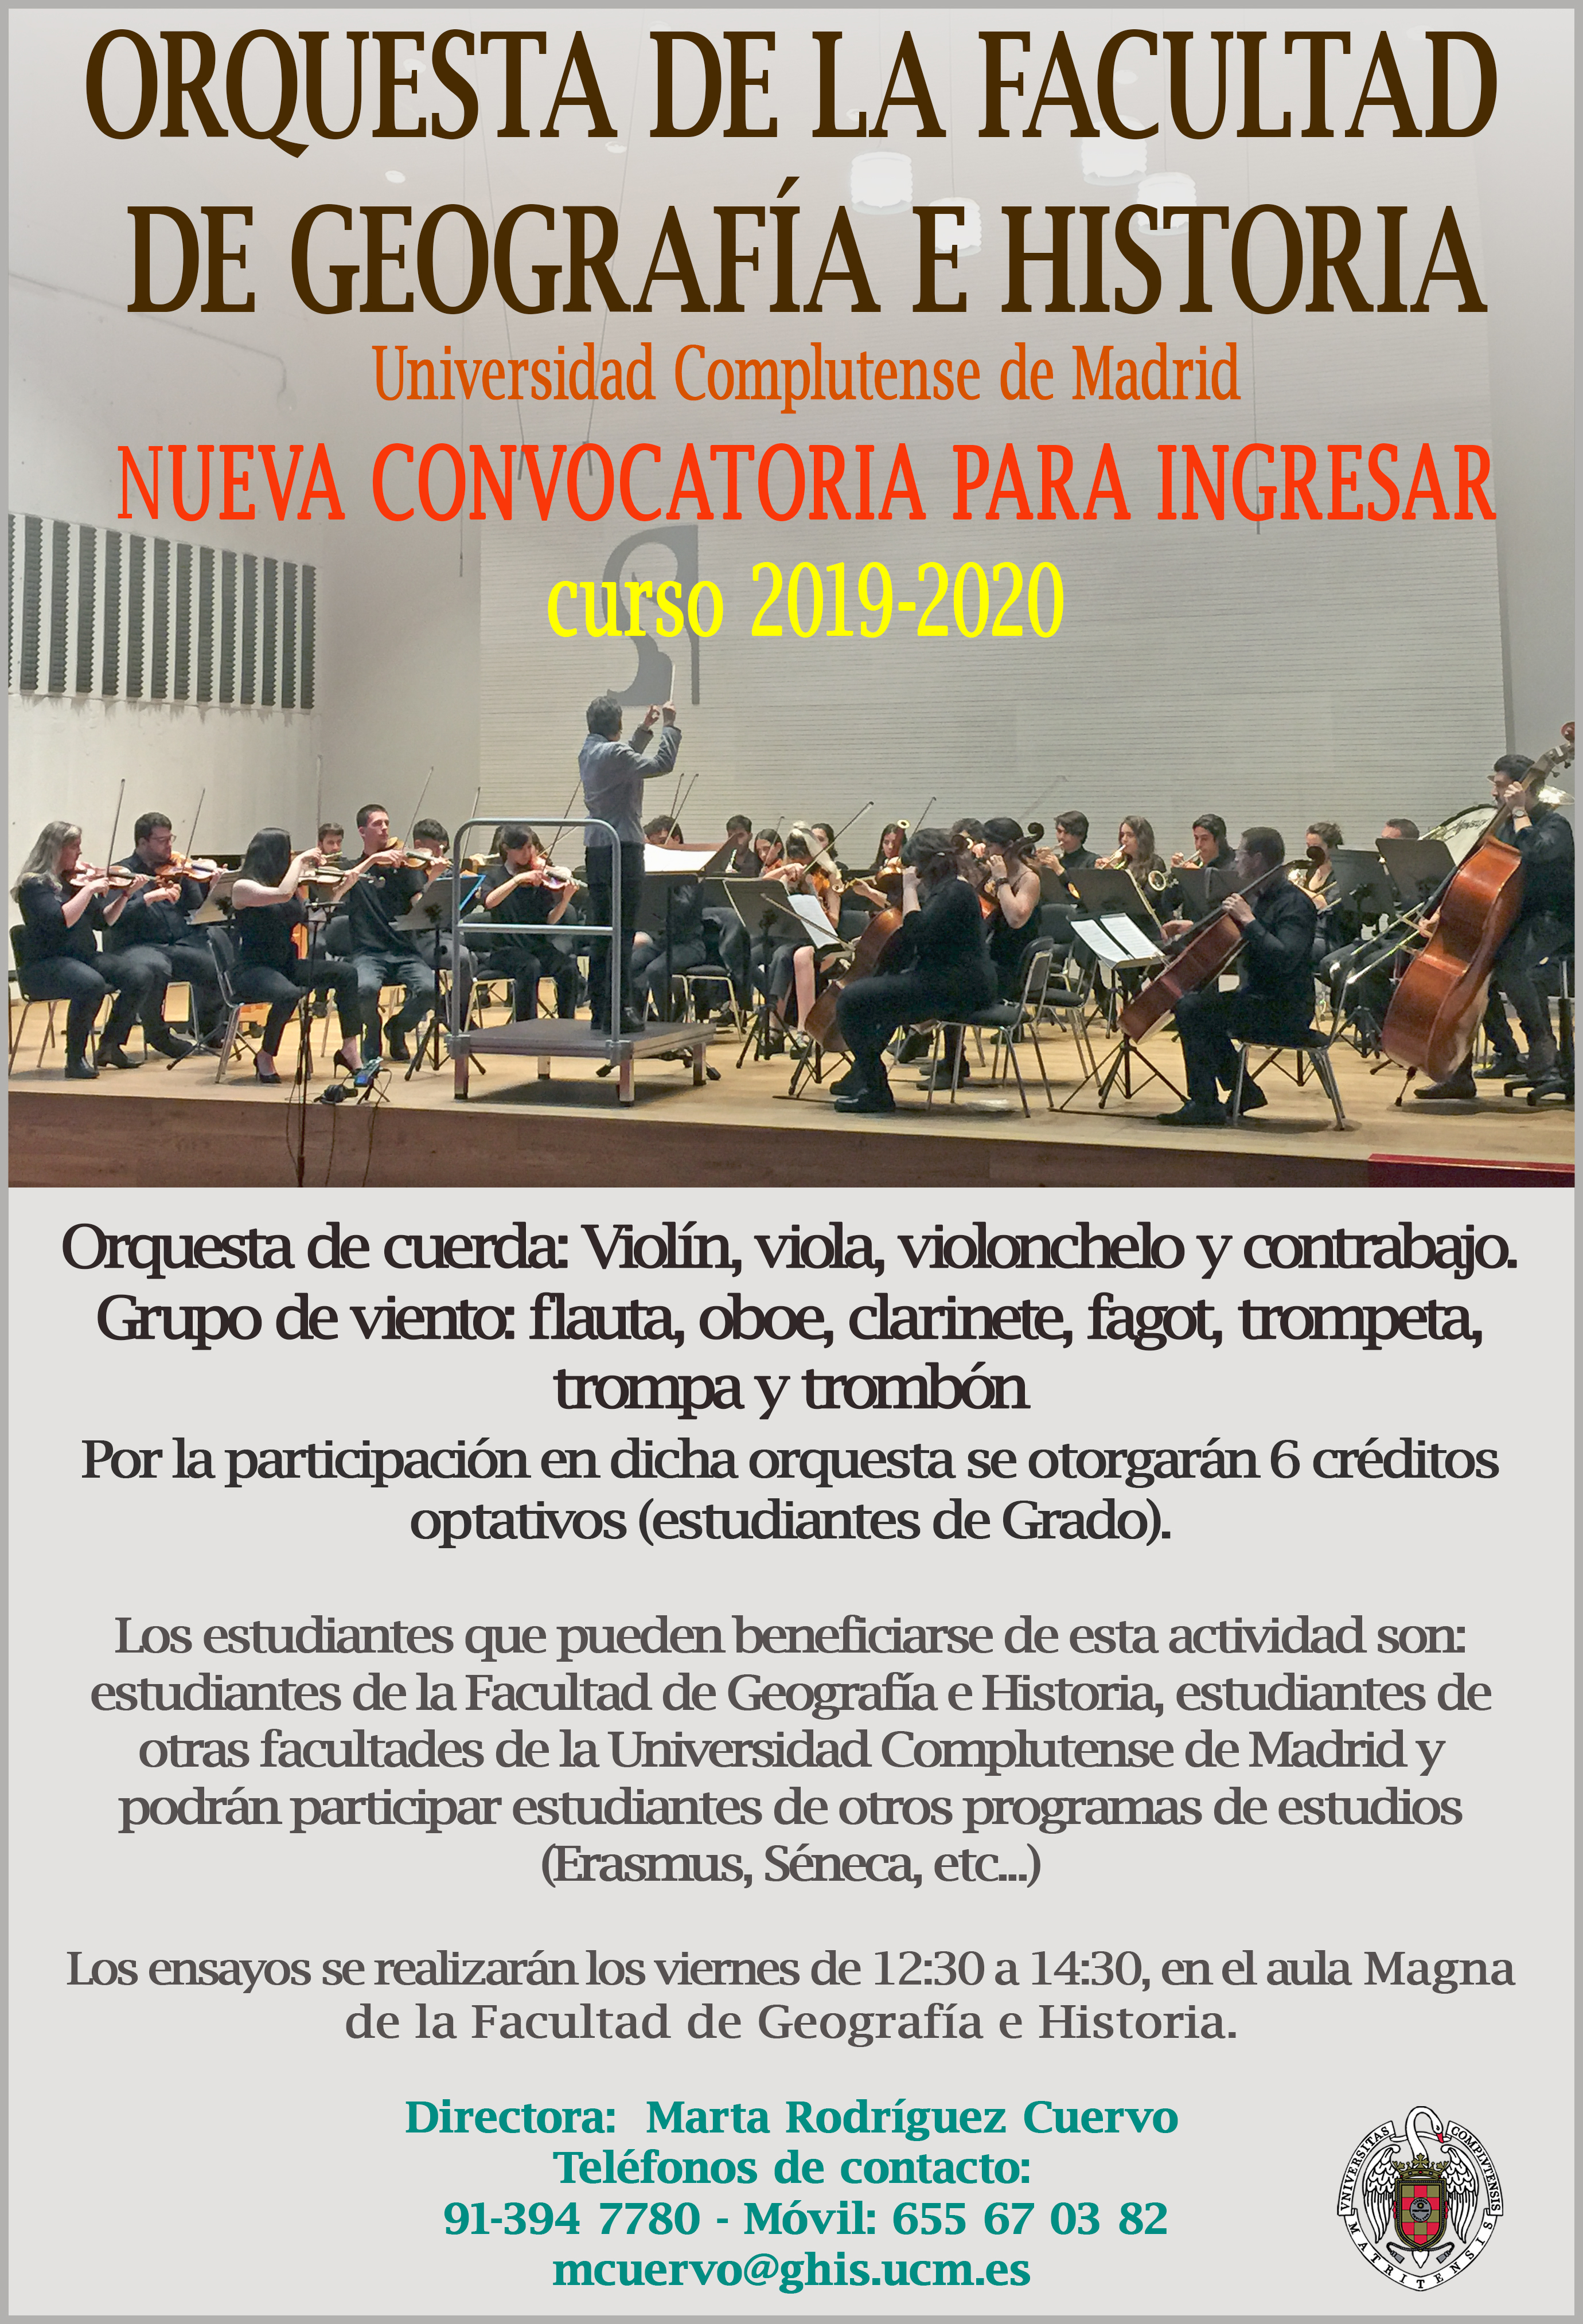 Convocatoria para ingresar en la Orquesta de la Facultad de Geografía e Historia, UCM. Curso 2019-2020